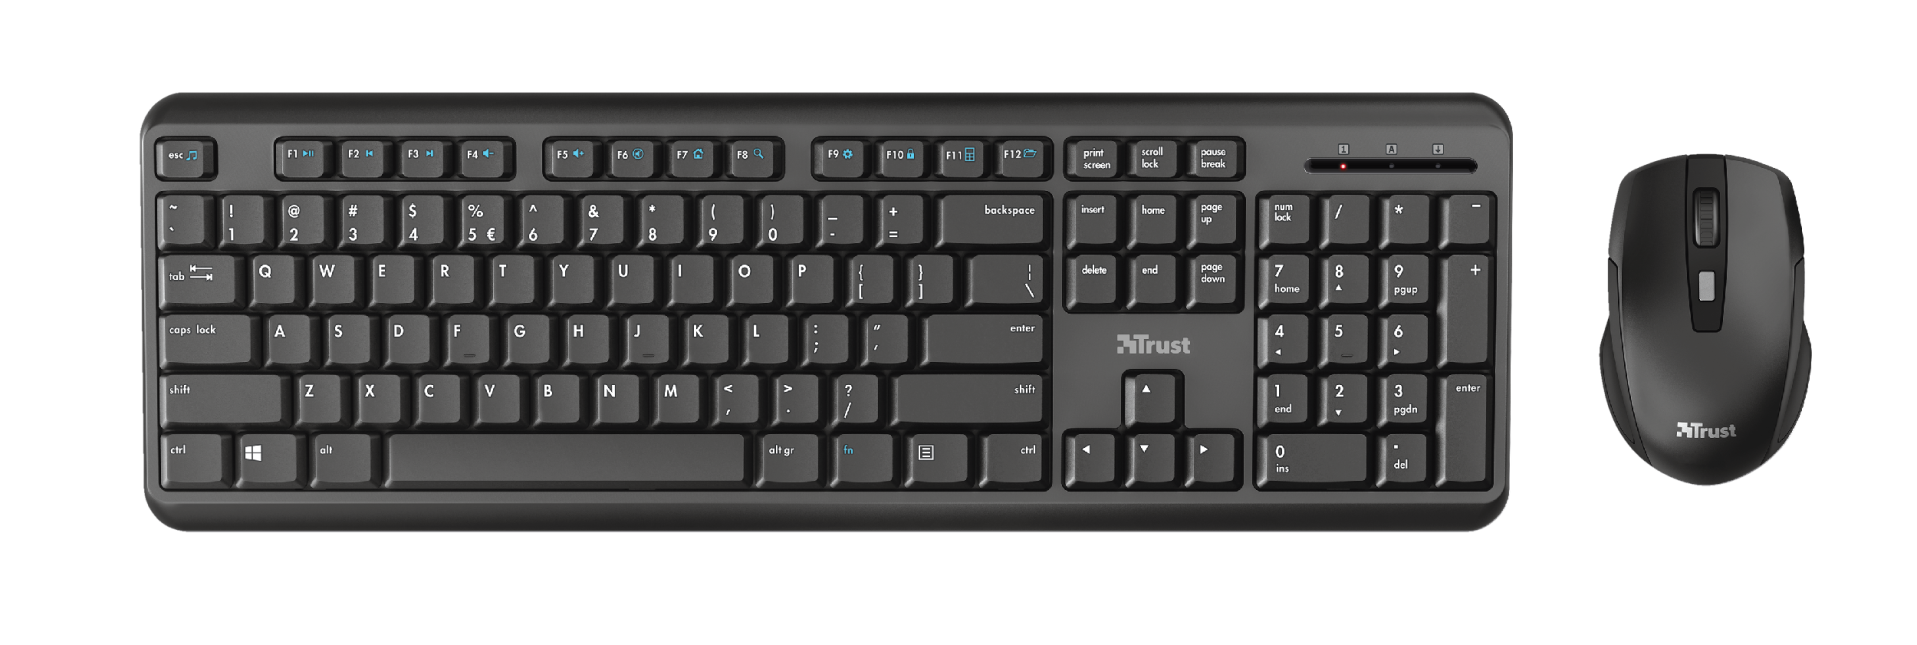 Клавиатура + мышь Trust Ody, беспроводная, USB, чёрный (24159)